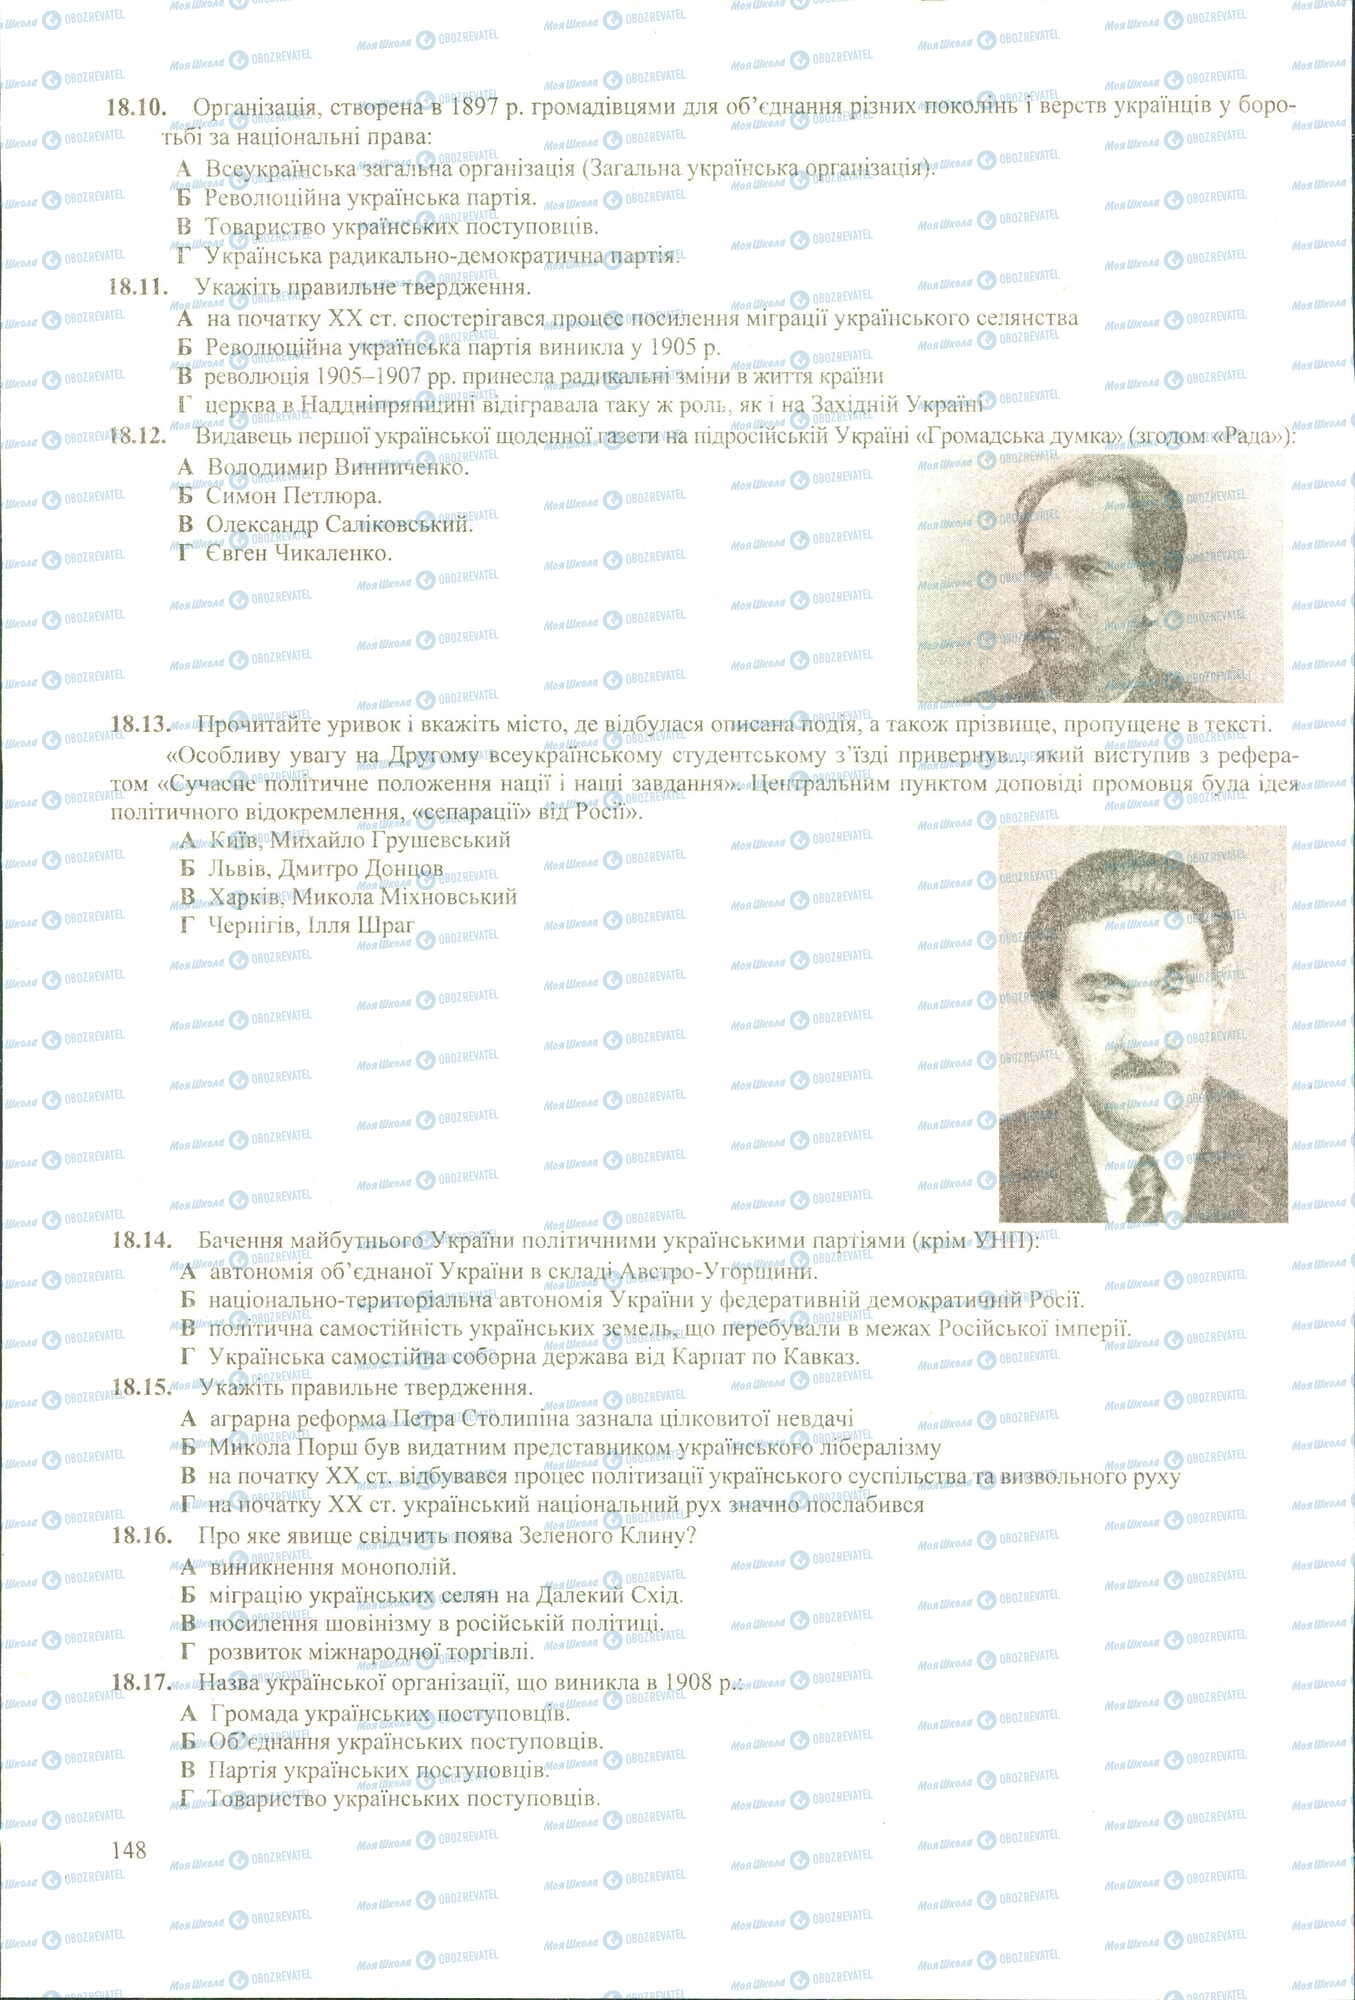 ЗНО История Украины 11 класс страница 10-17